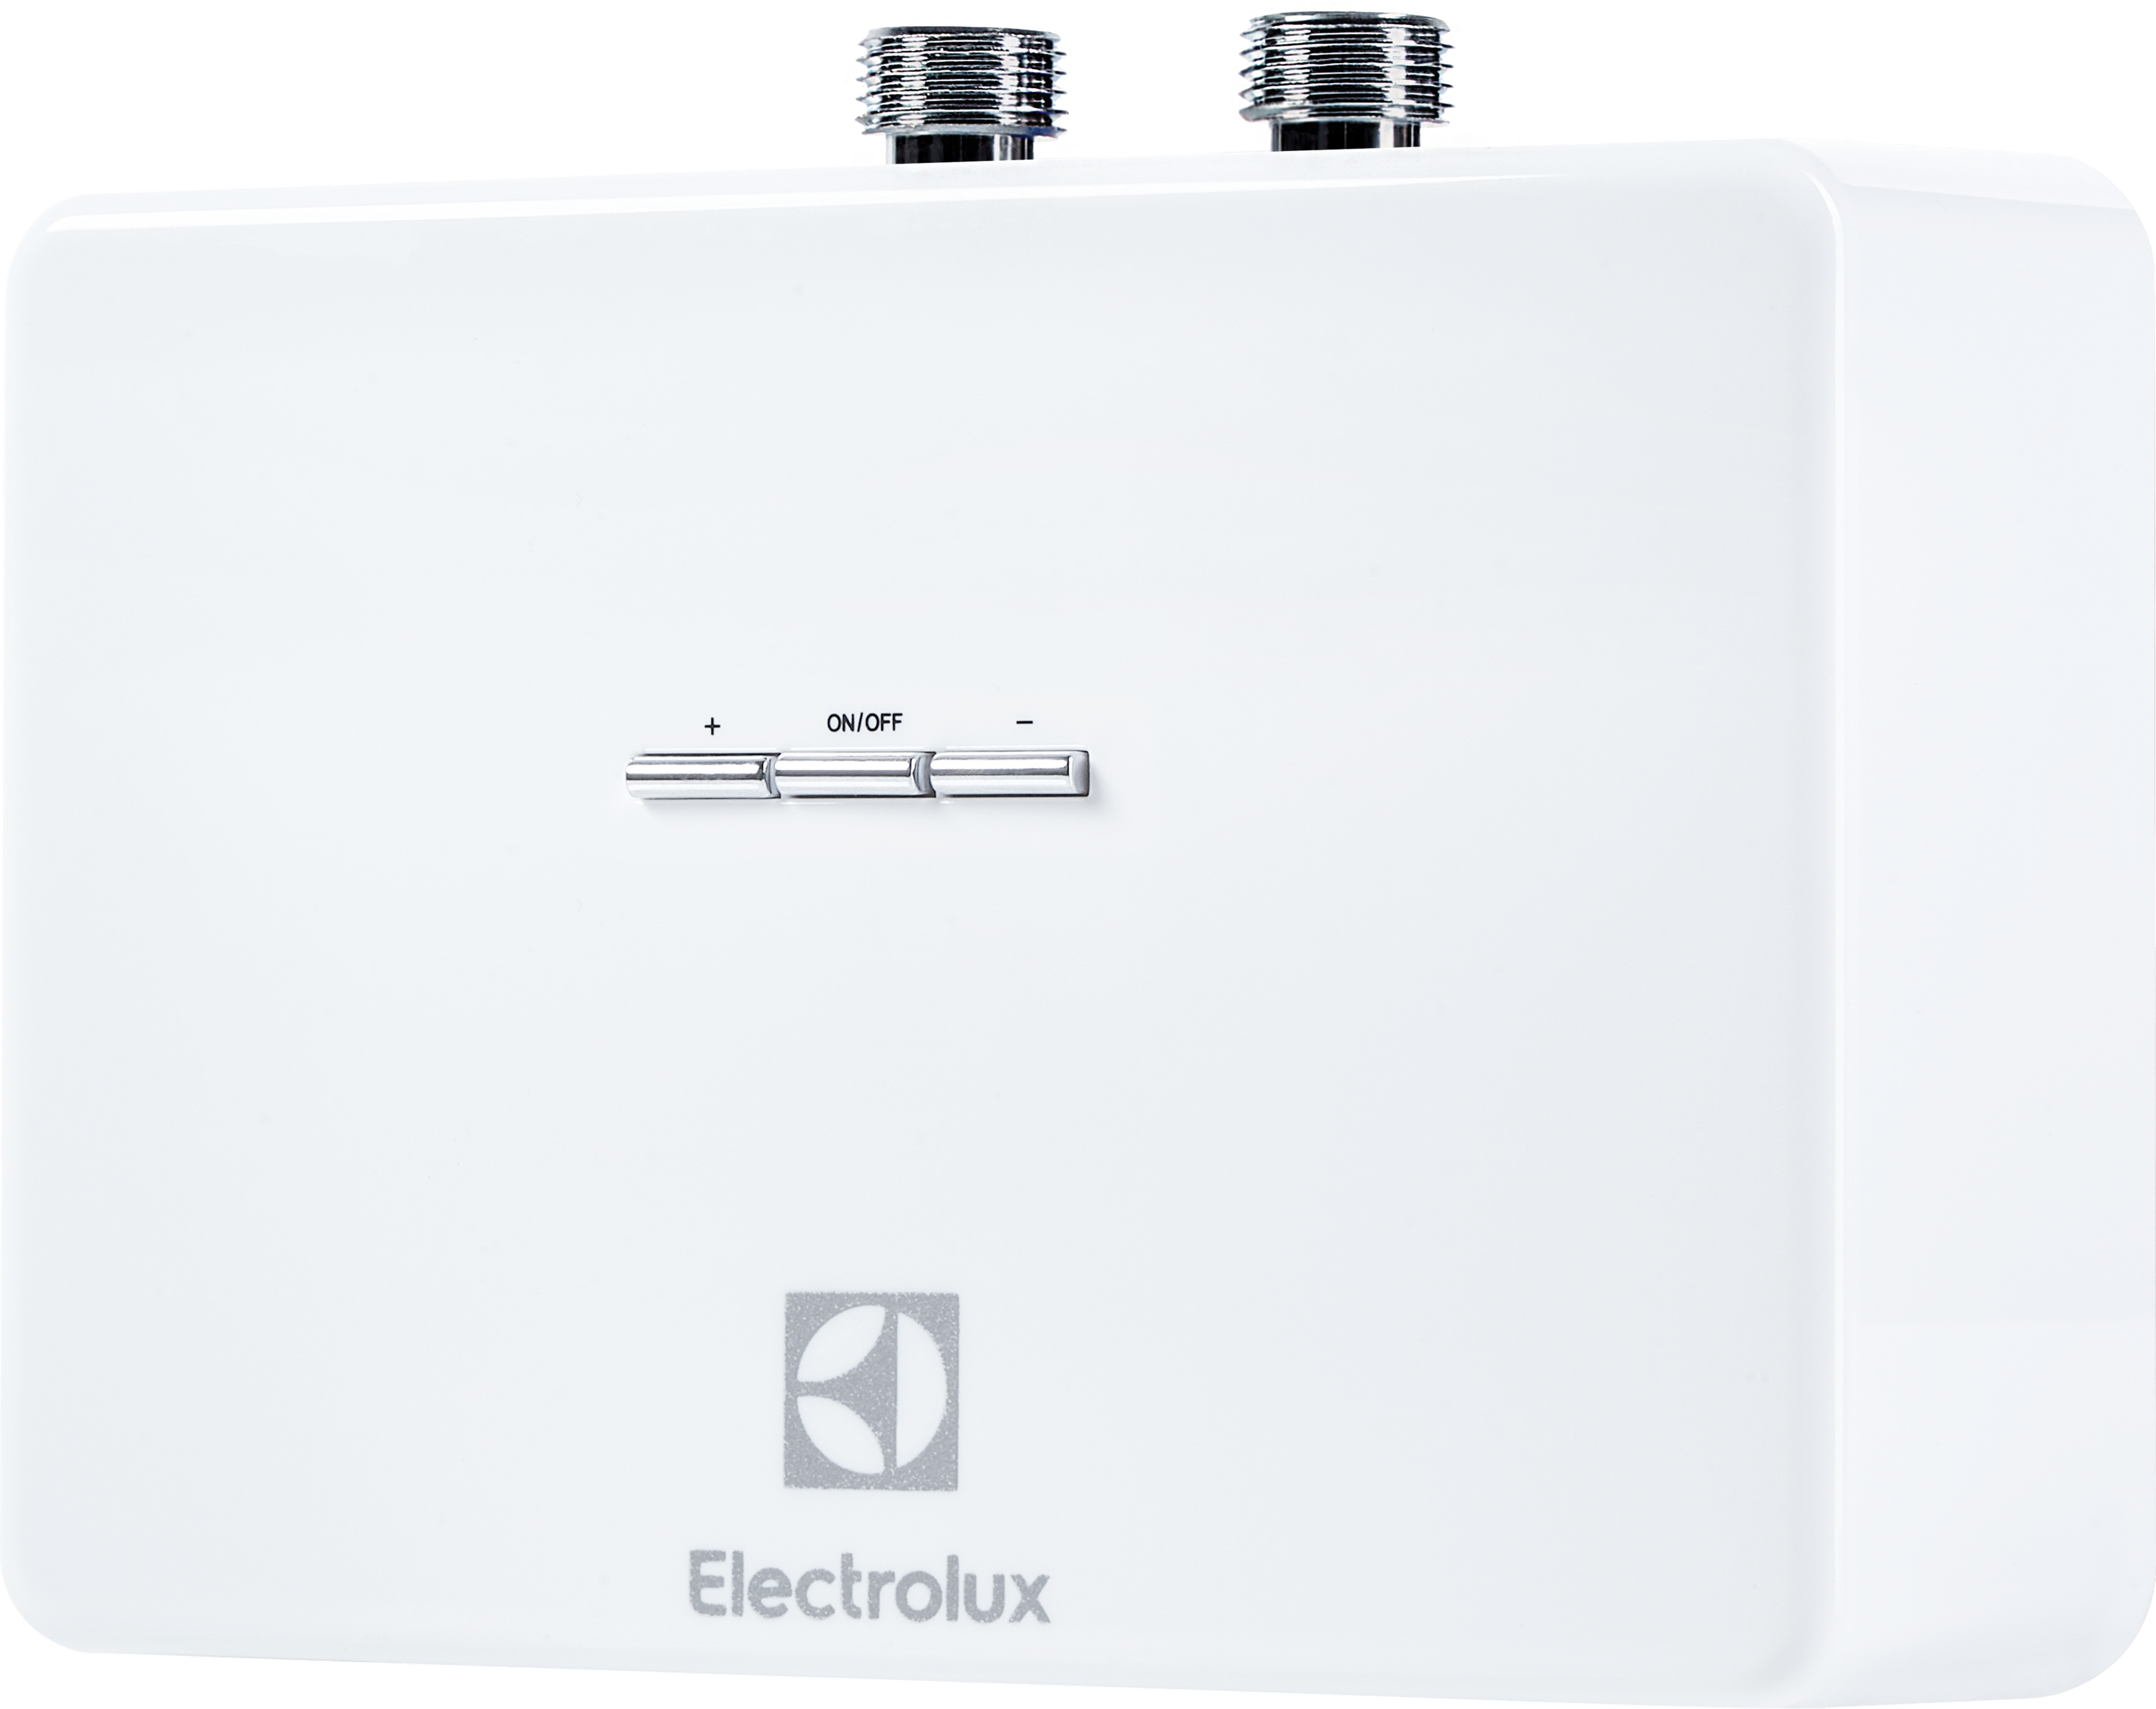 Напорный проточный водонагреватель Electrolux NPX 4 Aquatronic Digital 2.0